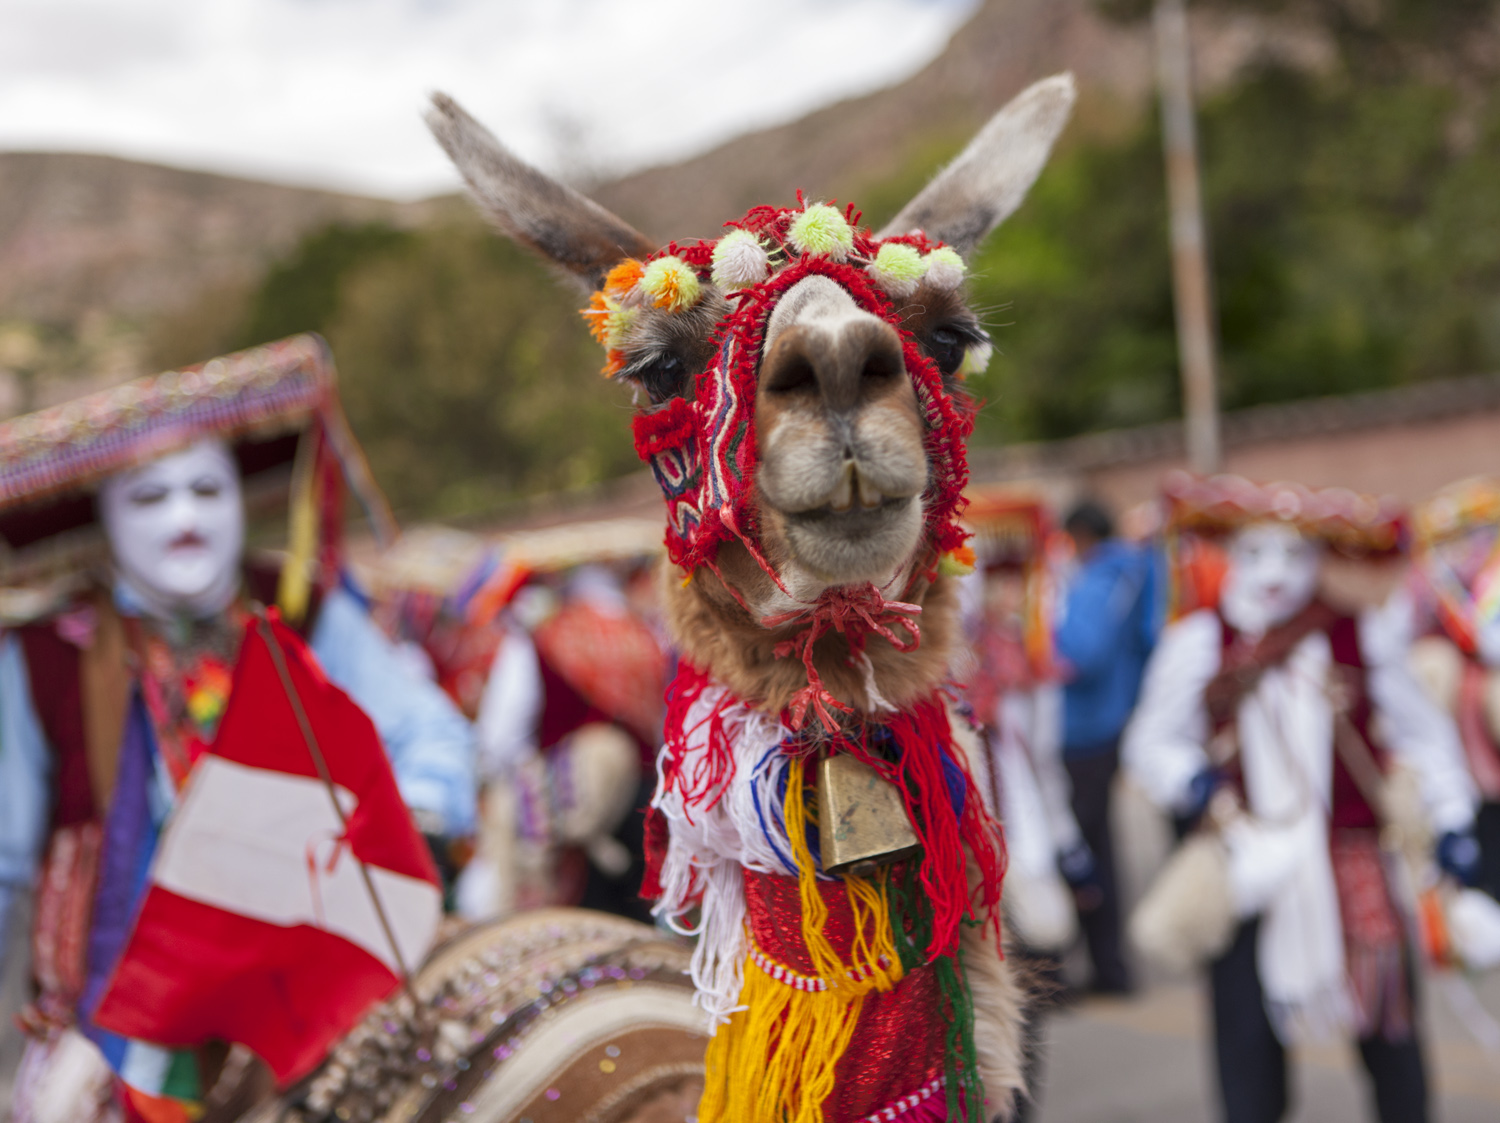 Llama in Peru, ffffound - travel blog